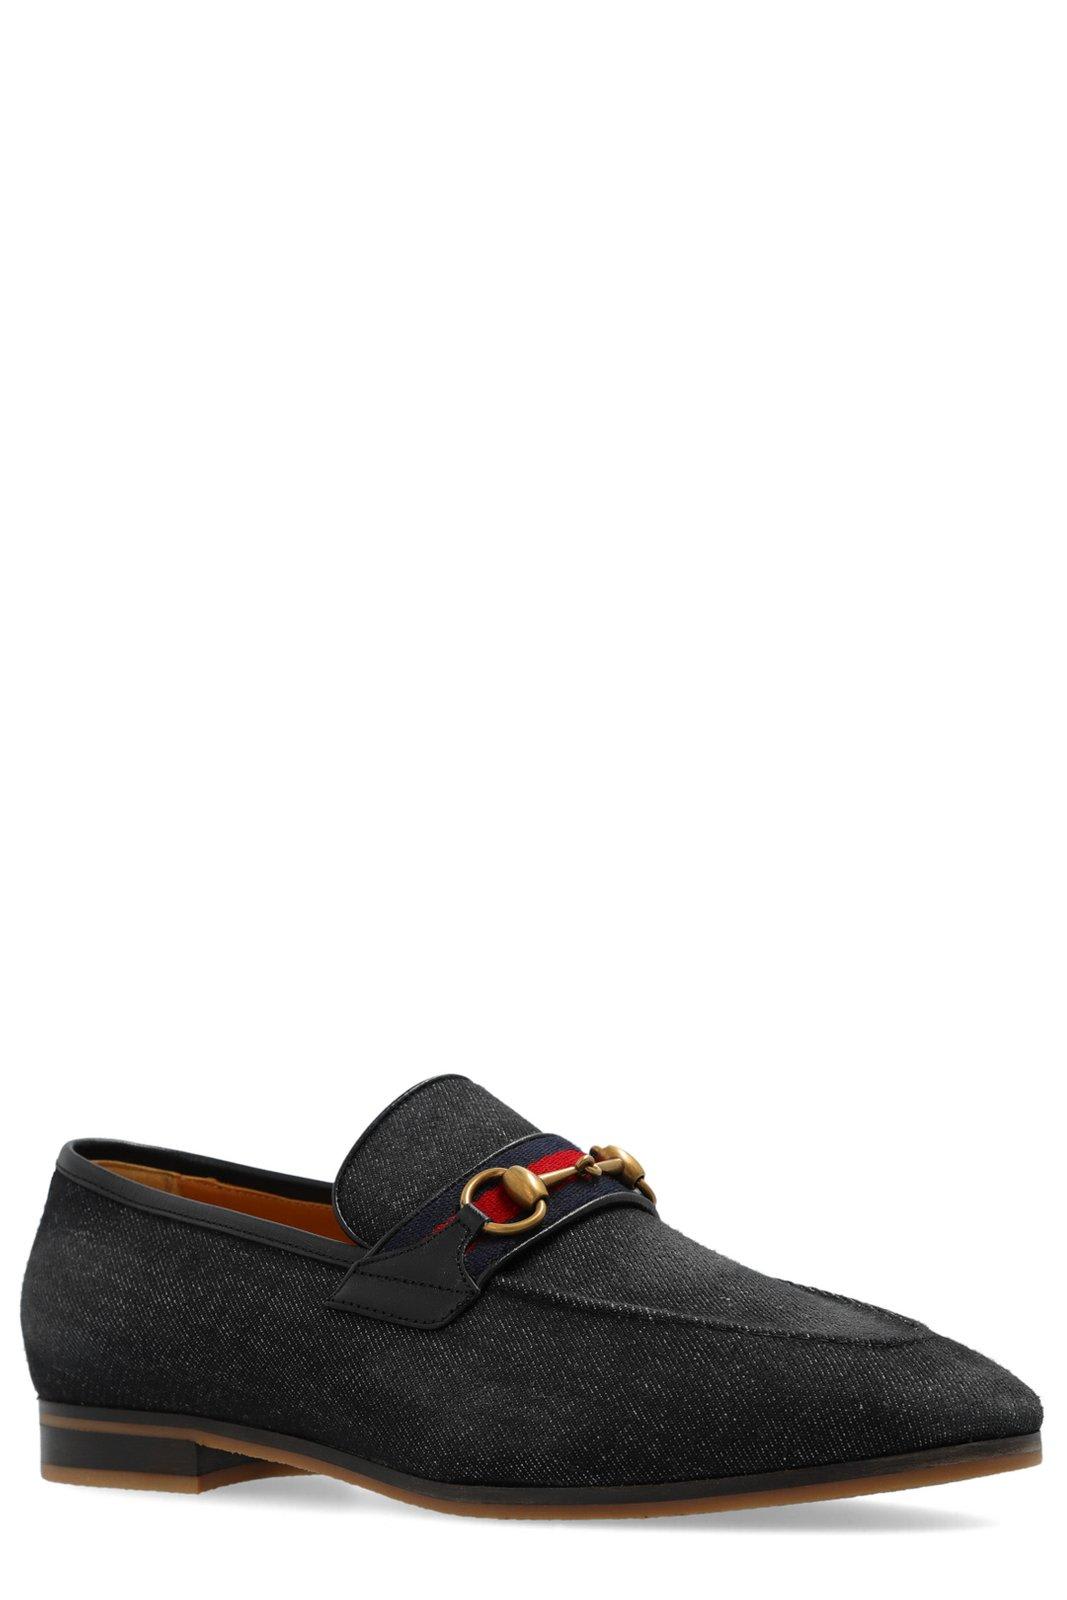 Shop Gucci Horsebit Detailed Denim Loafers In Blackdelaveblabrb